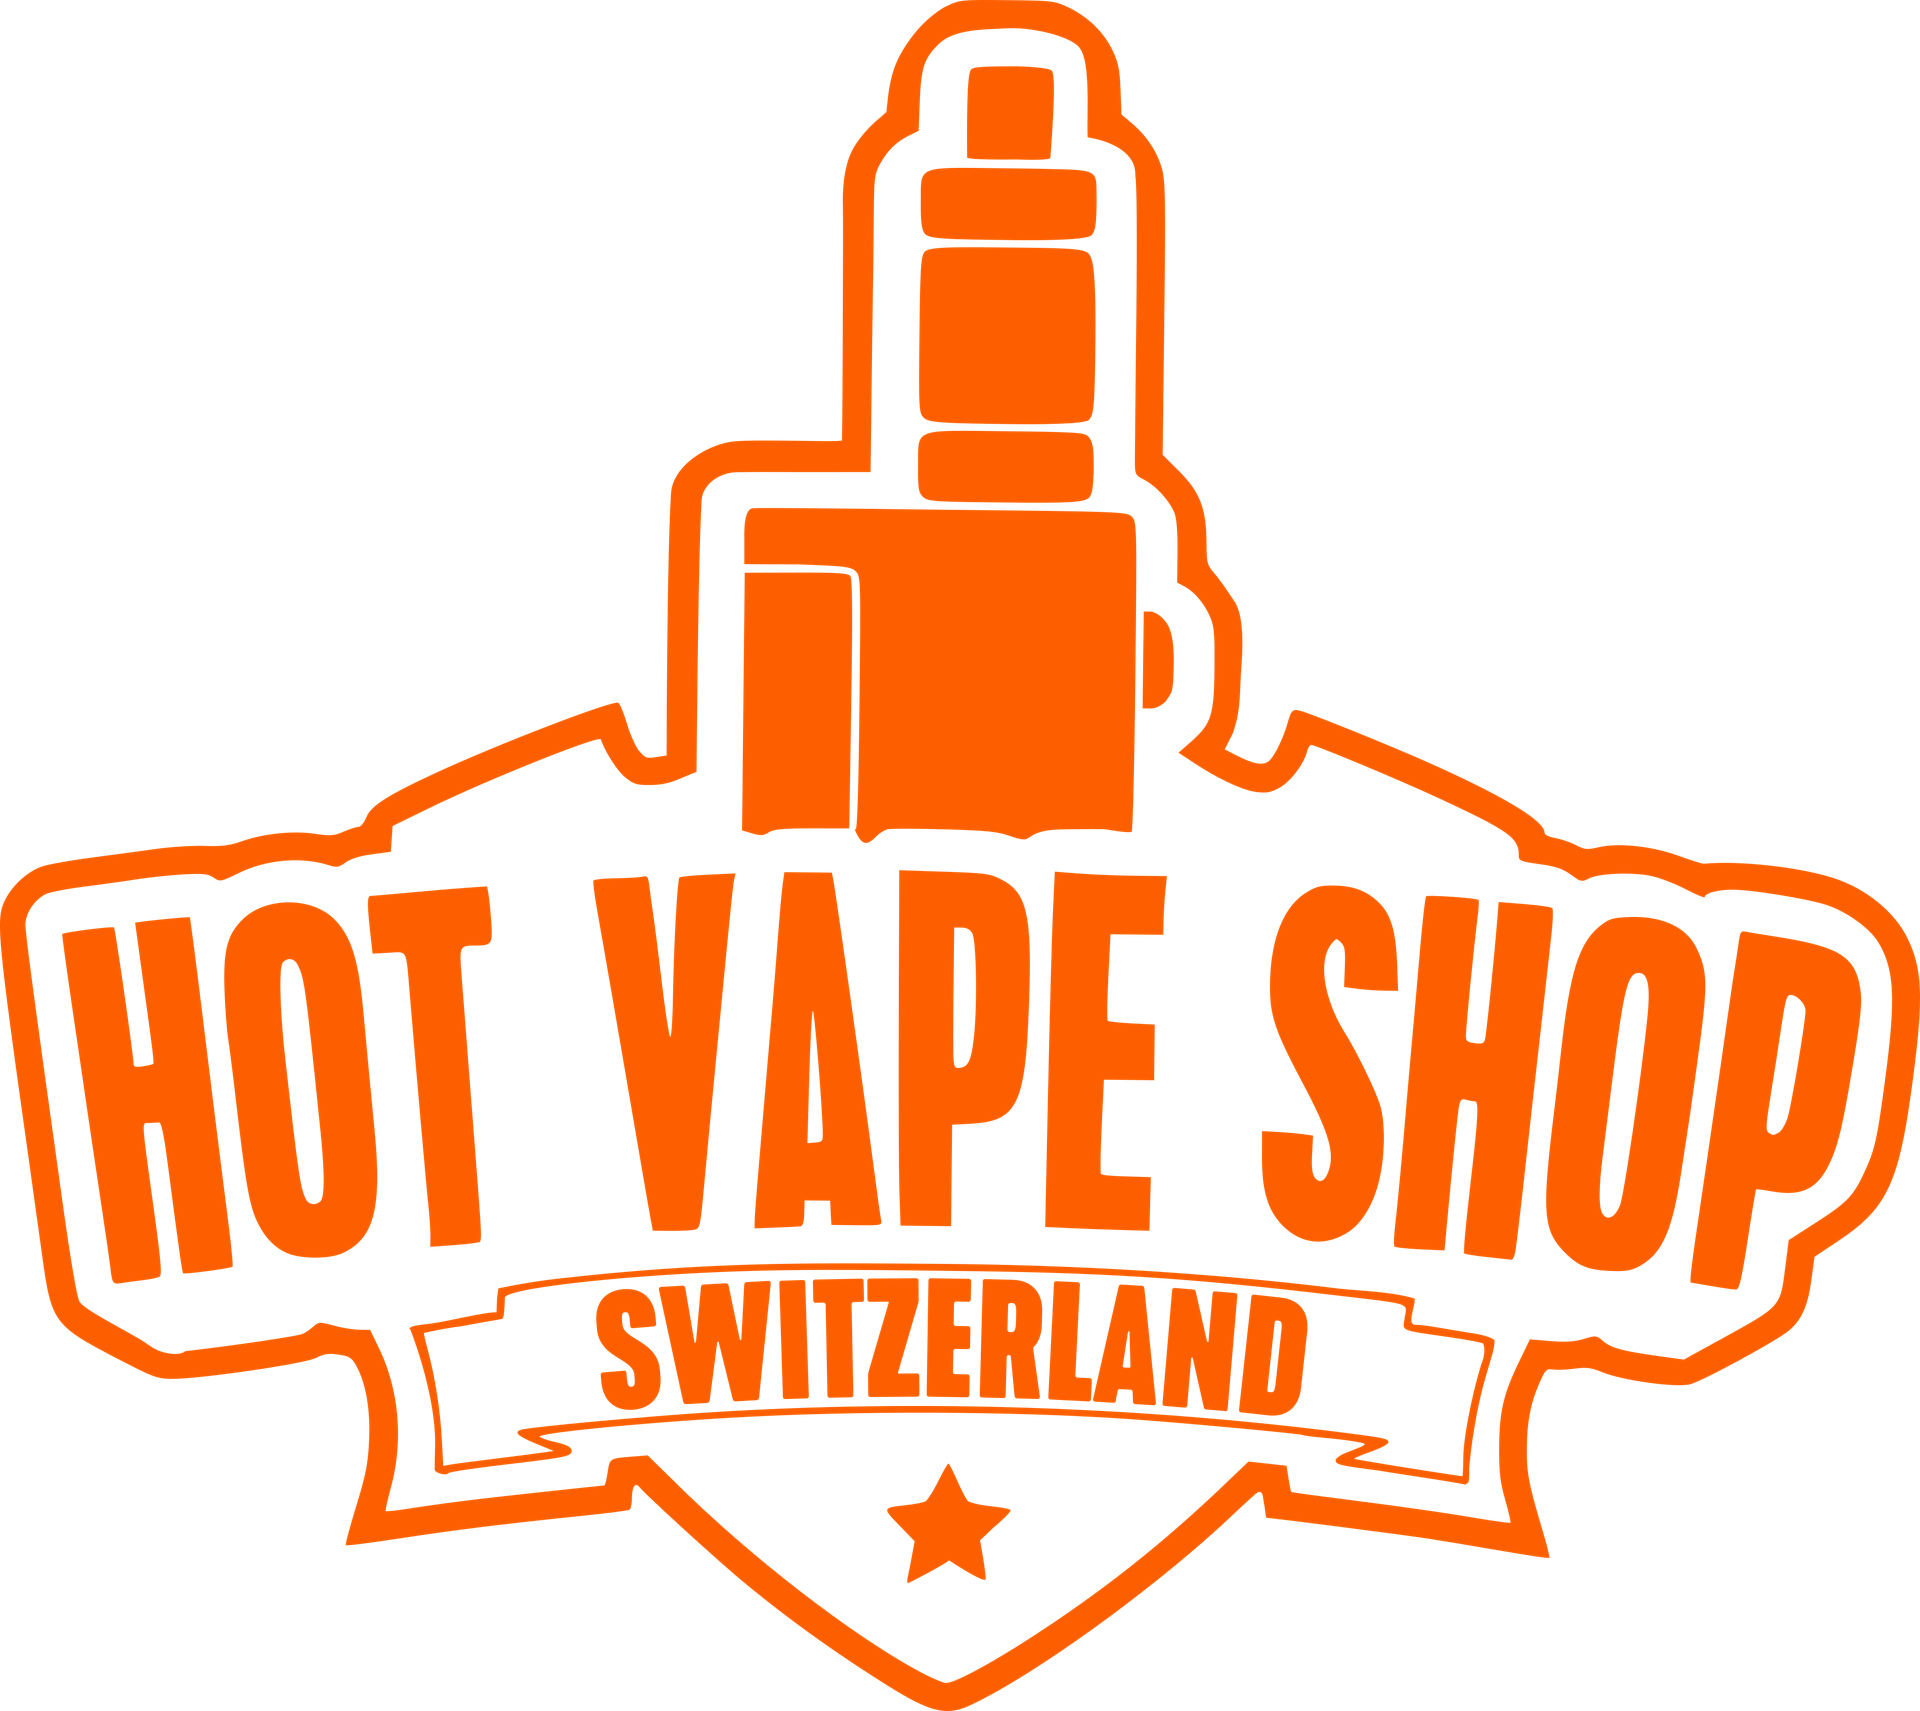 Hot Vape Shop